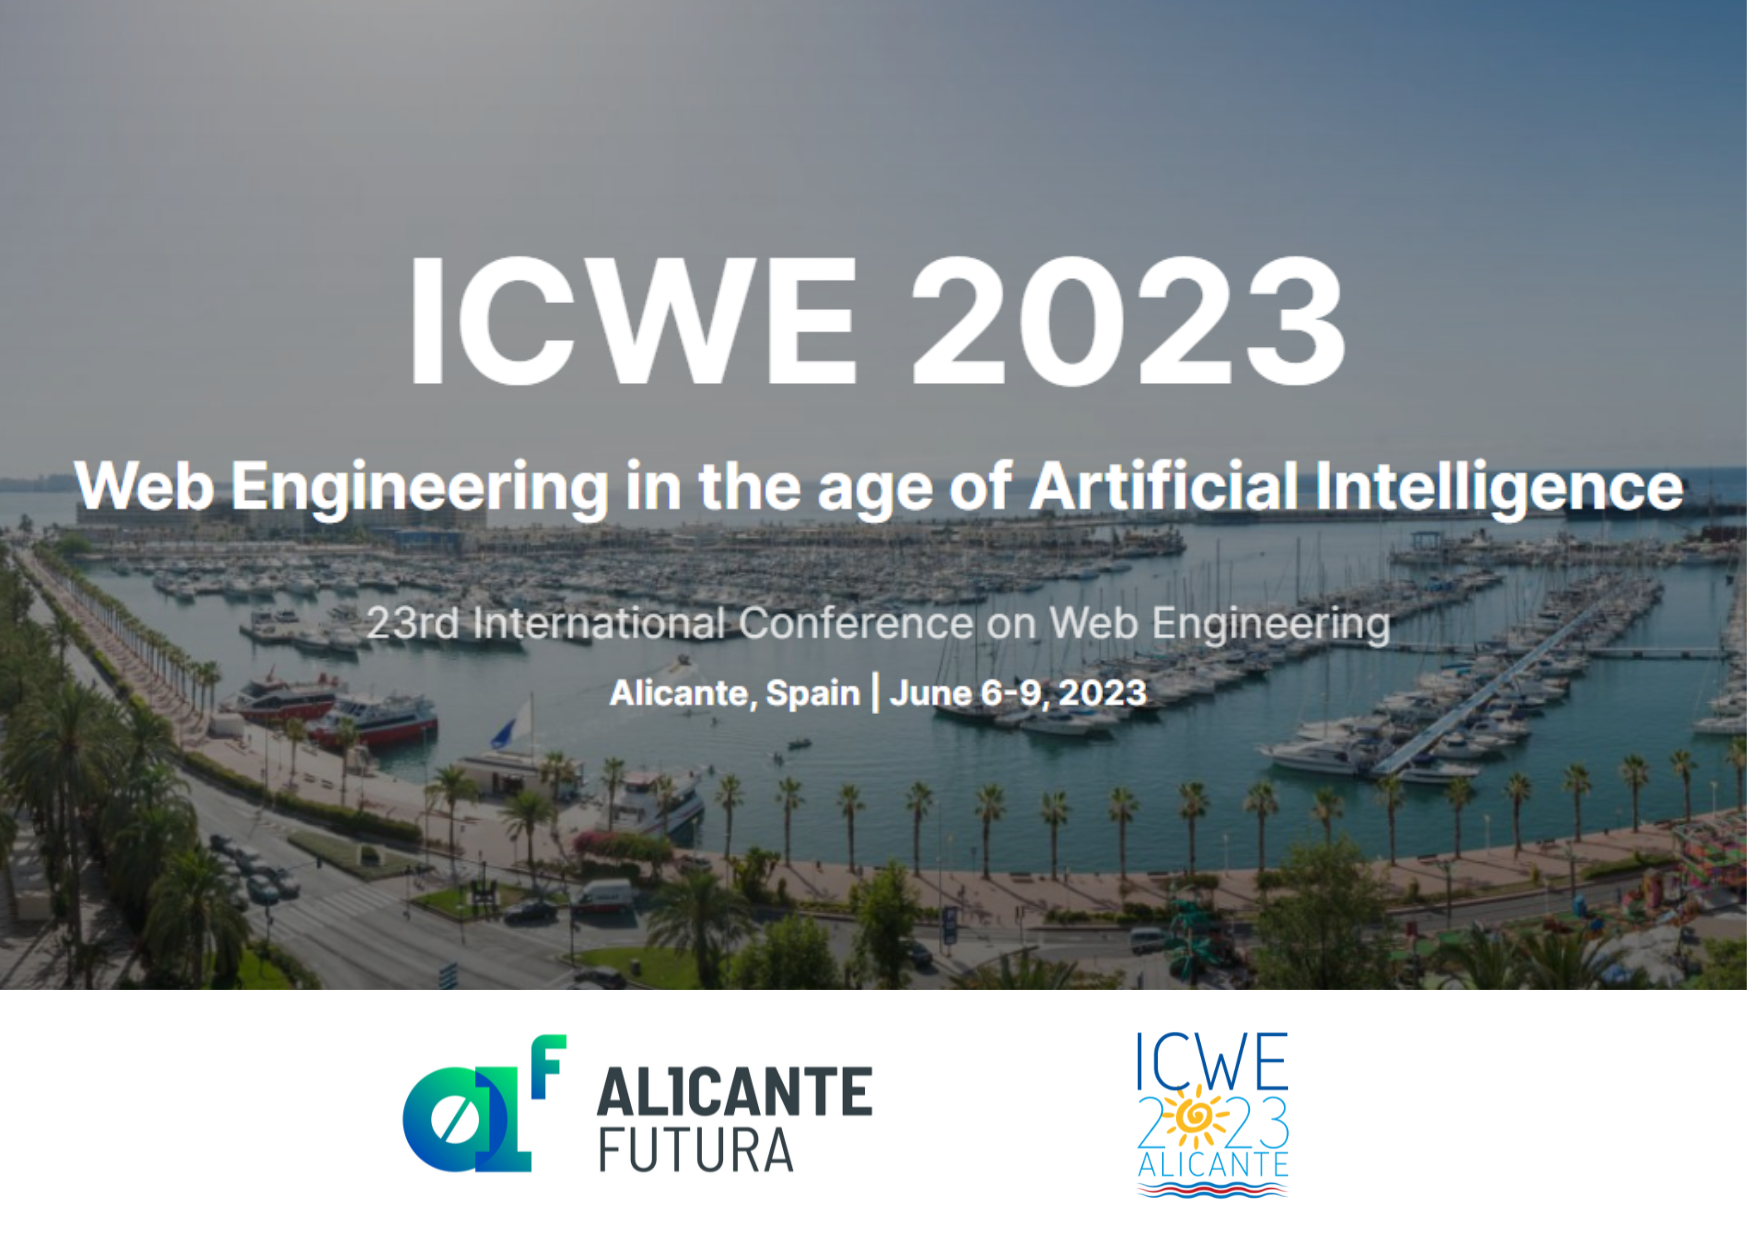 En este momento estás viendo ¡Save the date¡ The International Conference on Web Engineering (ICWE) 2023 se celebra en Alicante